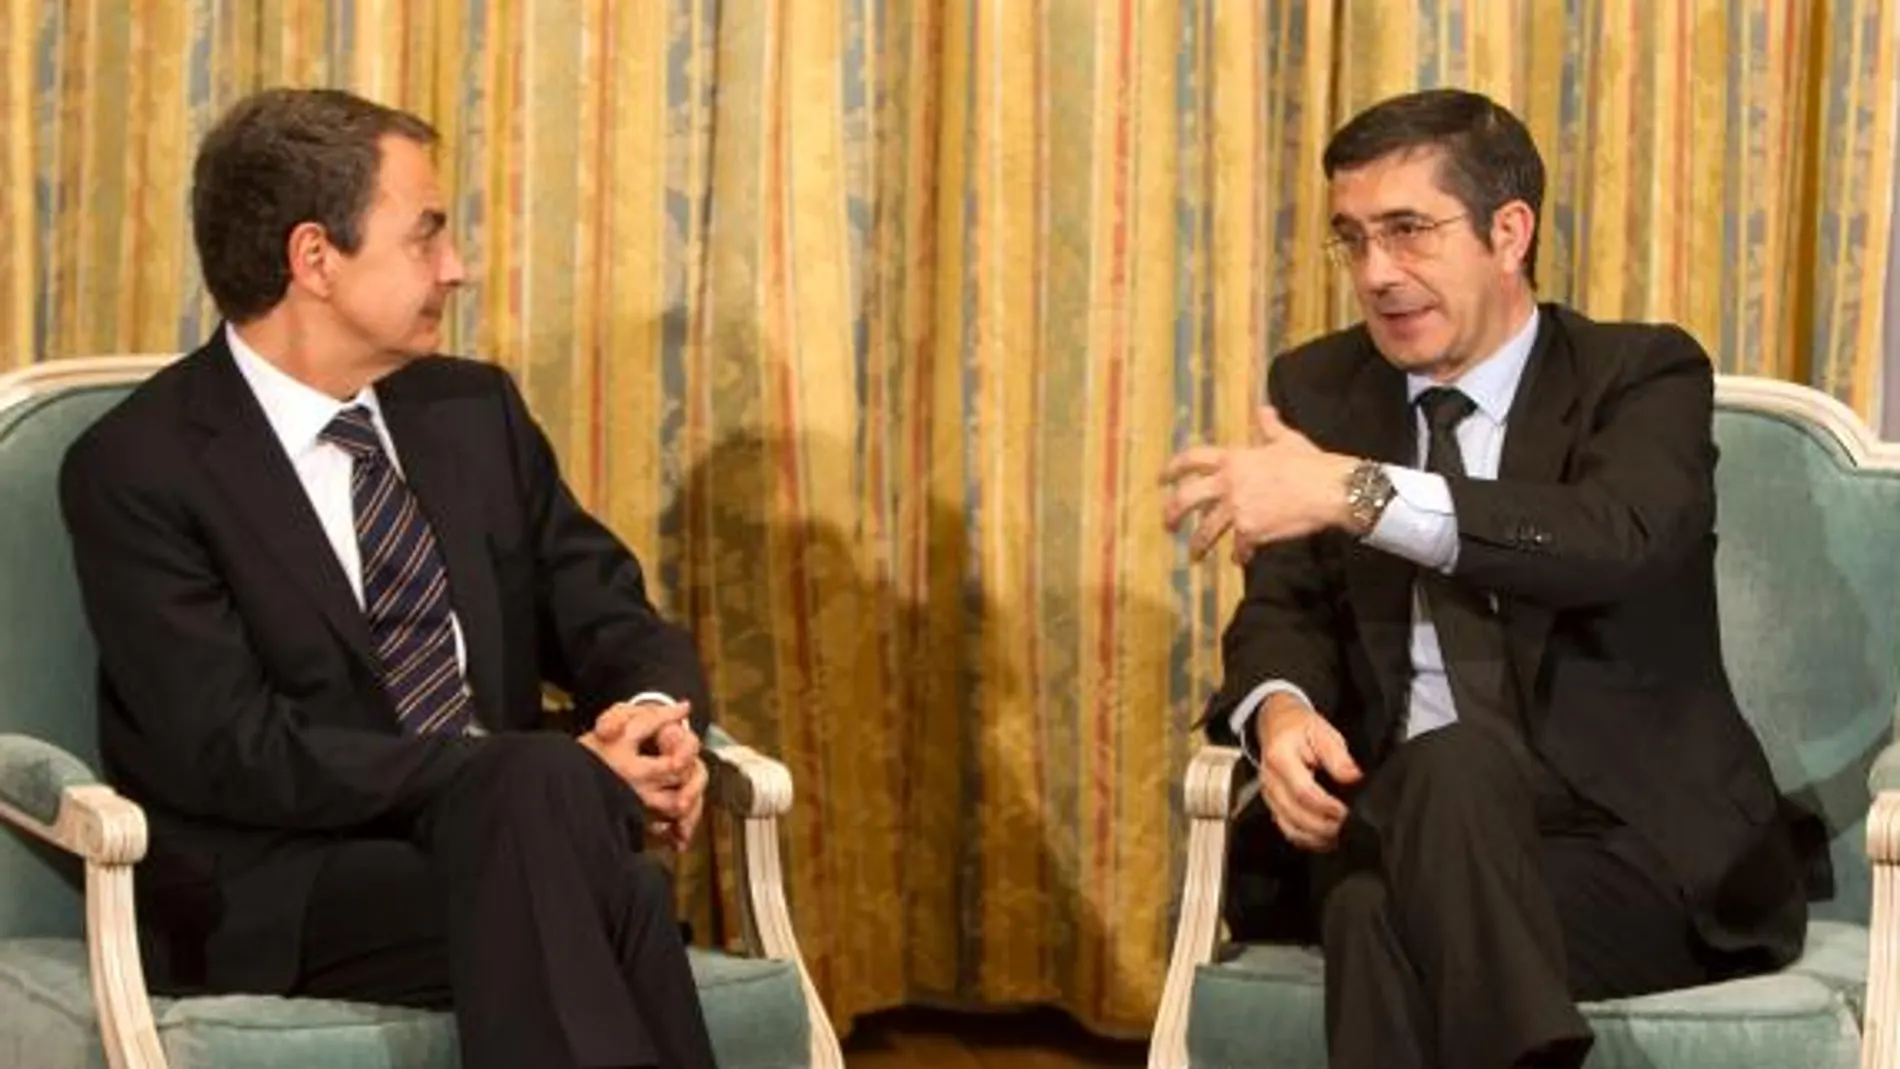 El lehendakari agradece a Zapatero su contribución arriesgada para acabar con ETA